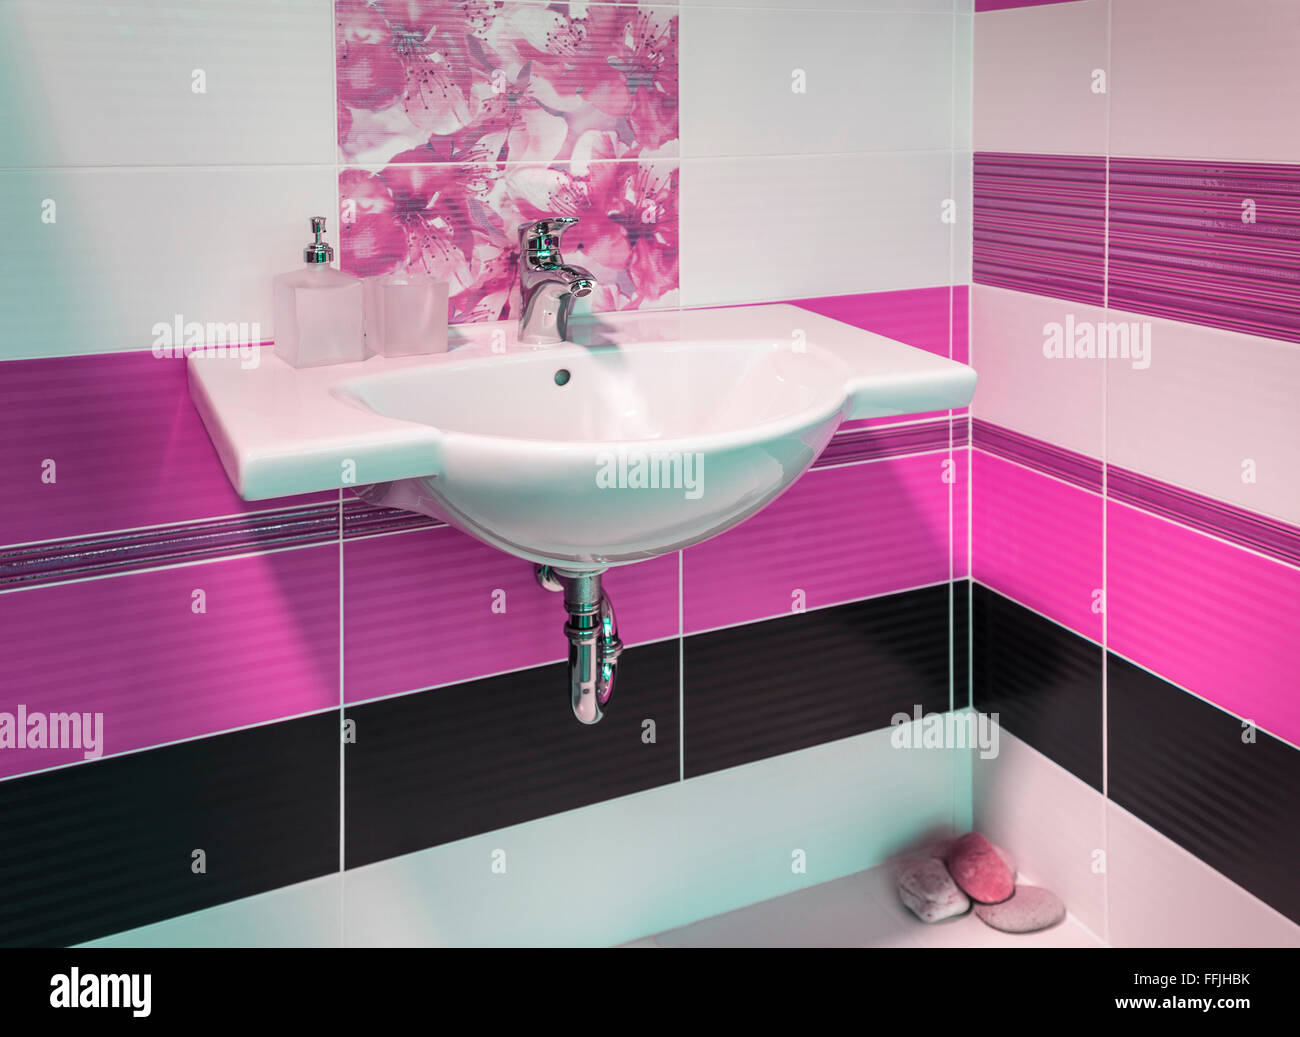 Détail de la belle et élégante salle de bains avec motif floral dans des tons roses Banque D'Images